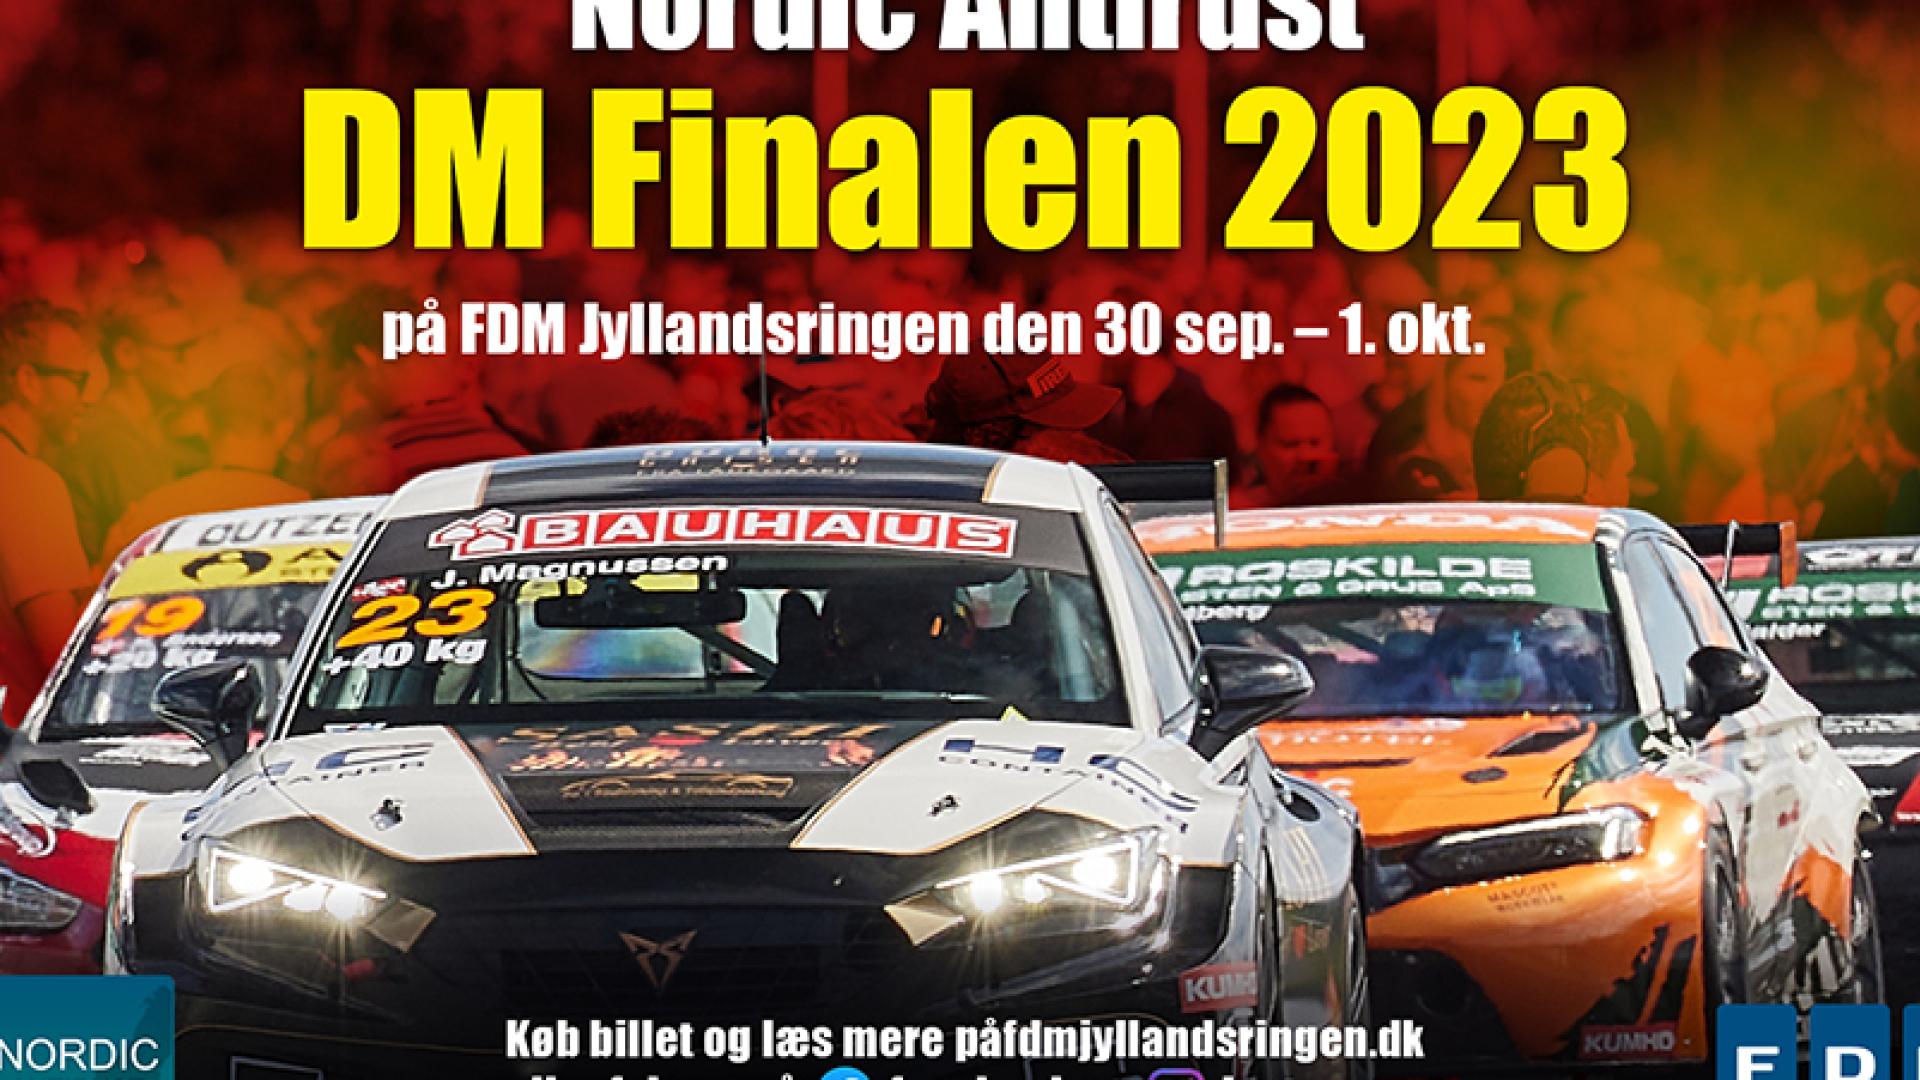 DM Finalen 2023